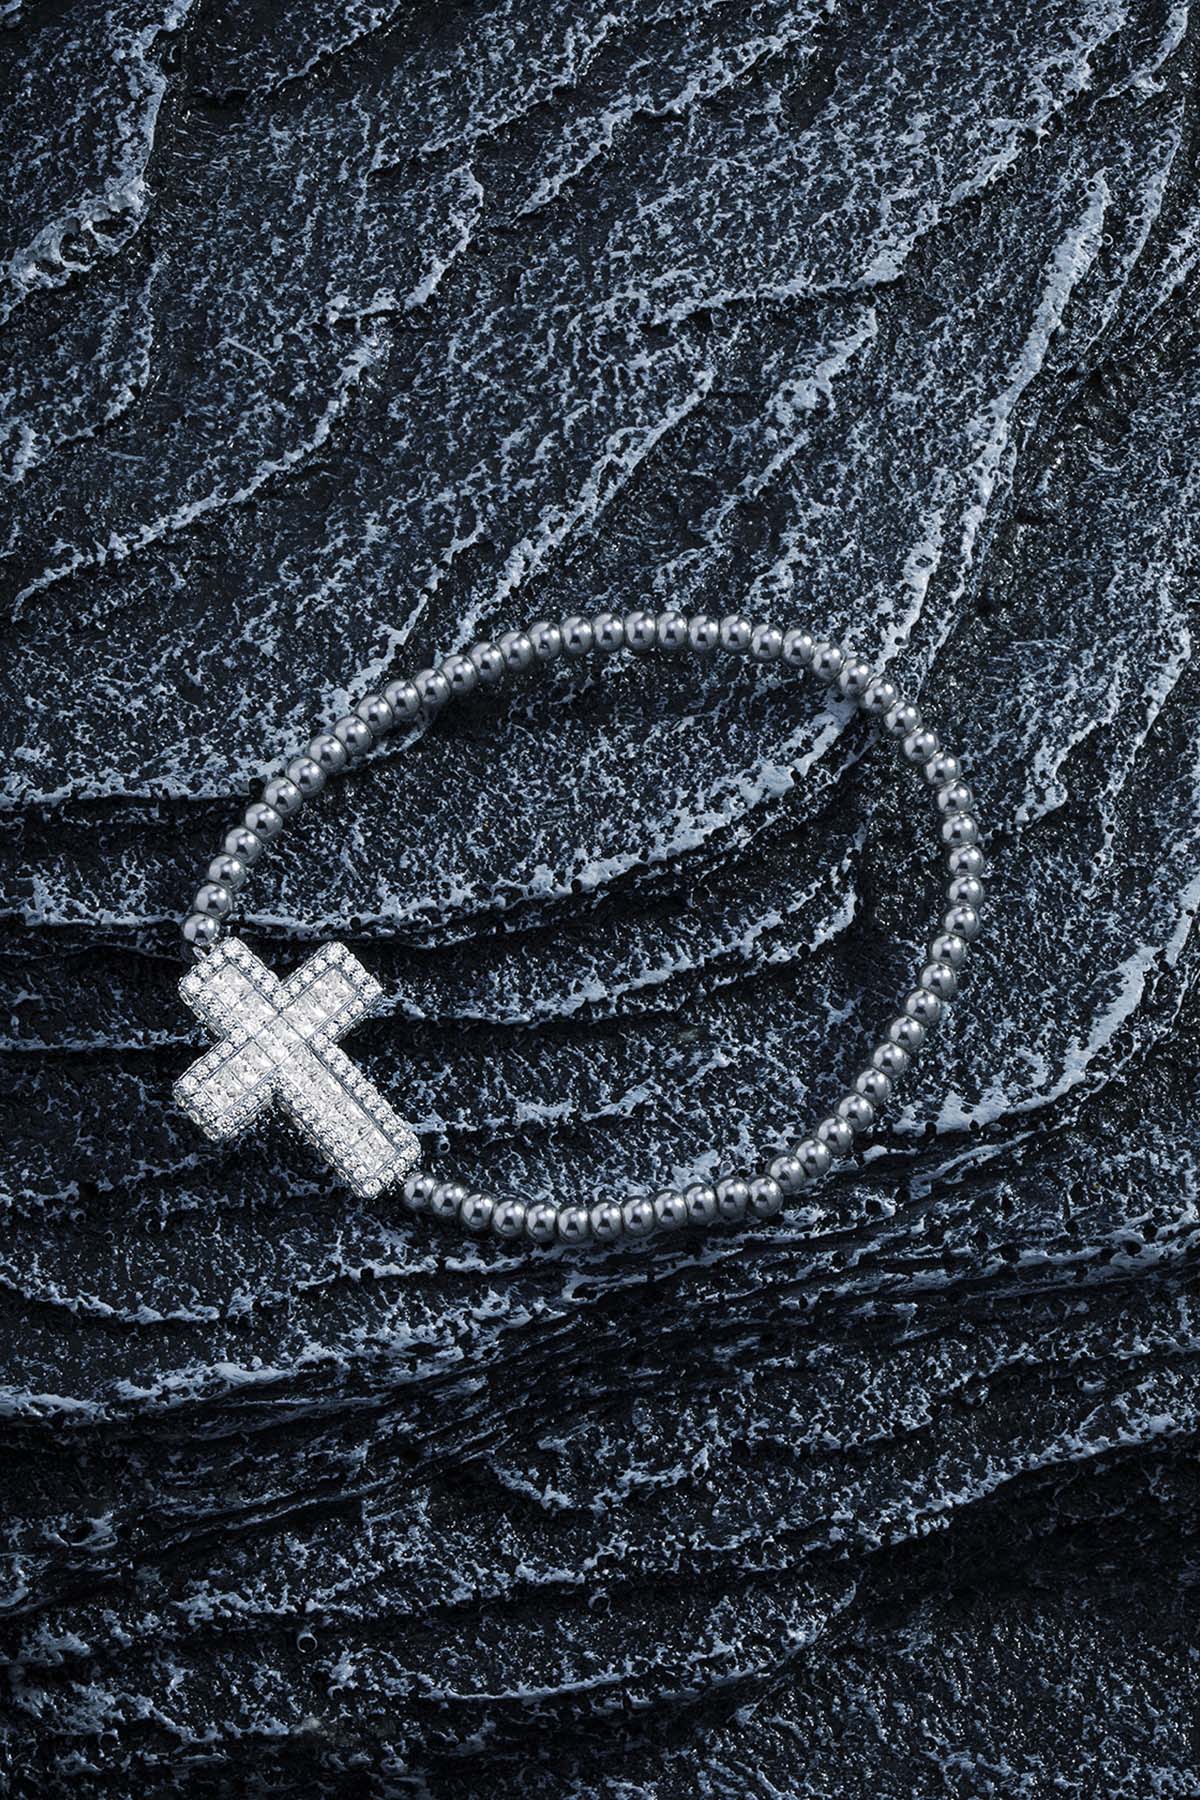 APM Monaco Cross Bracelet With Beads in Silver